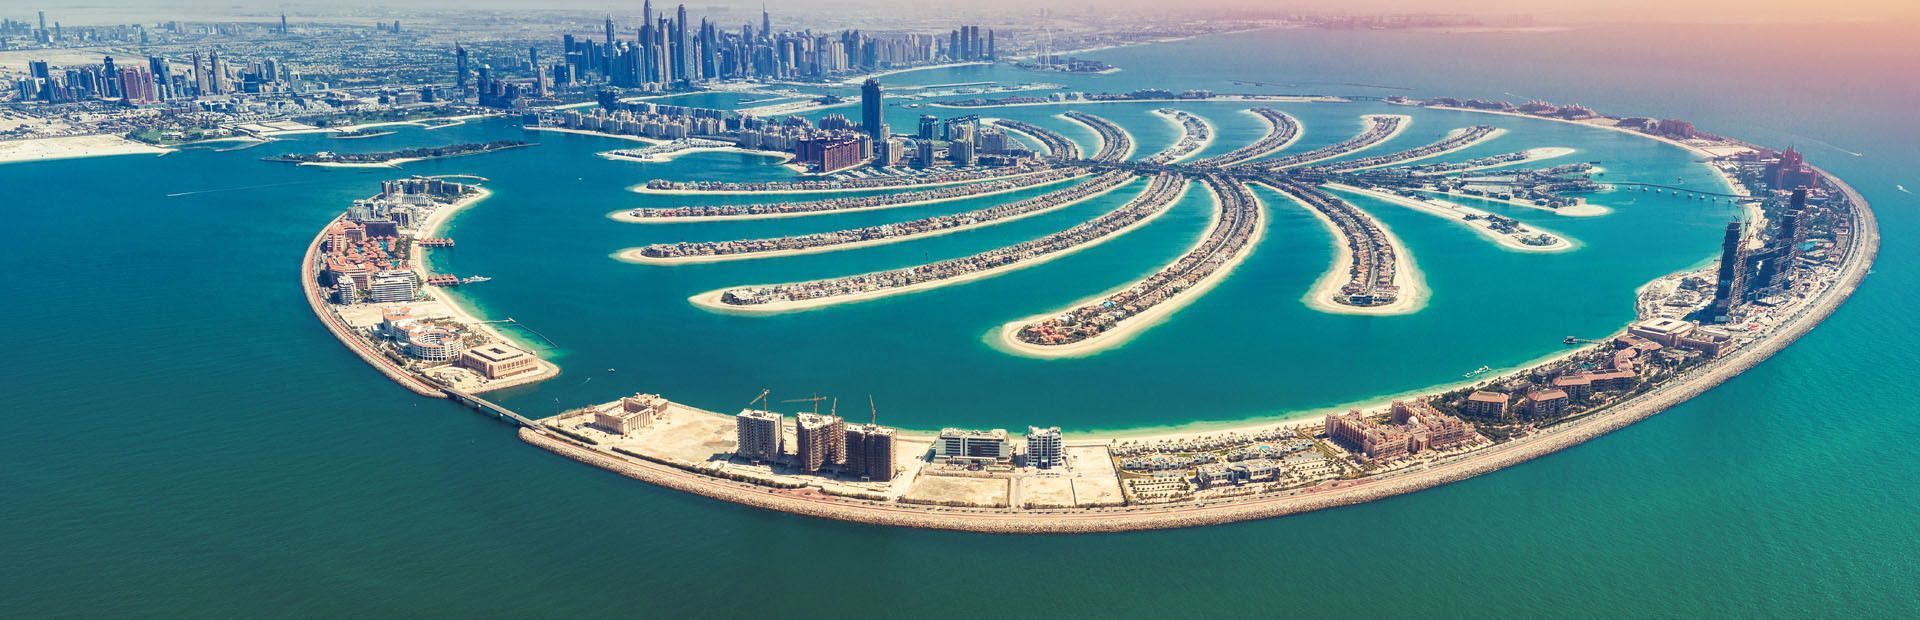 Turisti napoletani diretti a Dubai bloccati,”chi li risarcisce?”